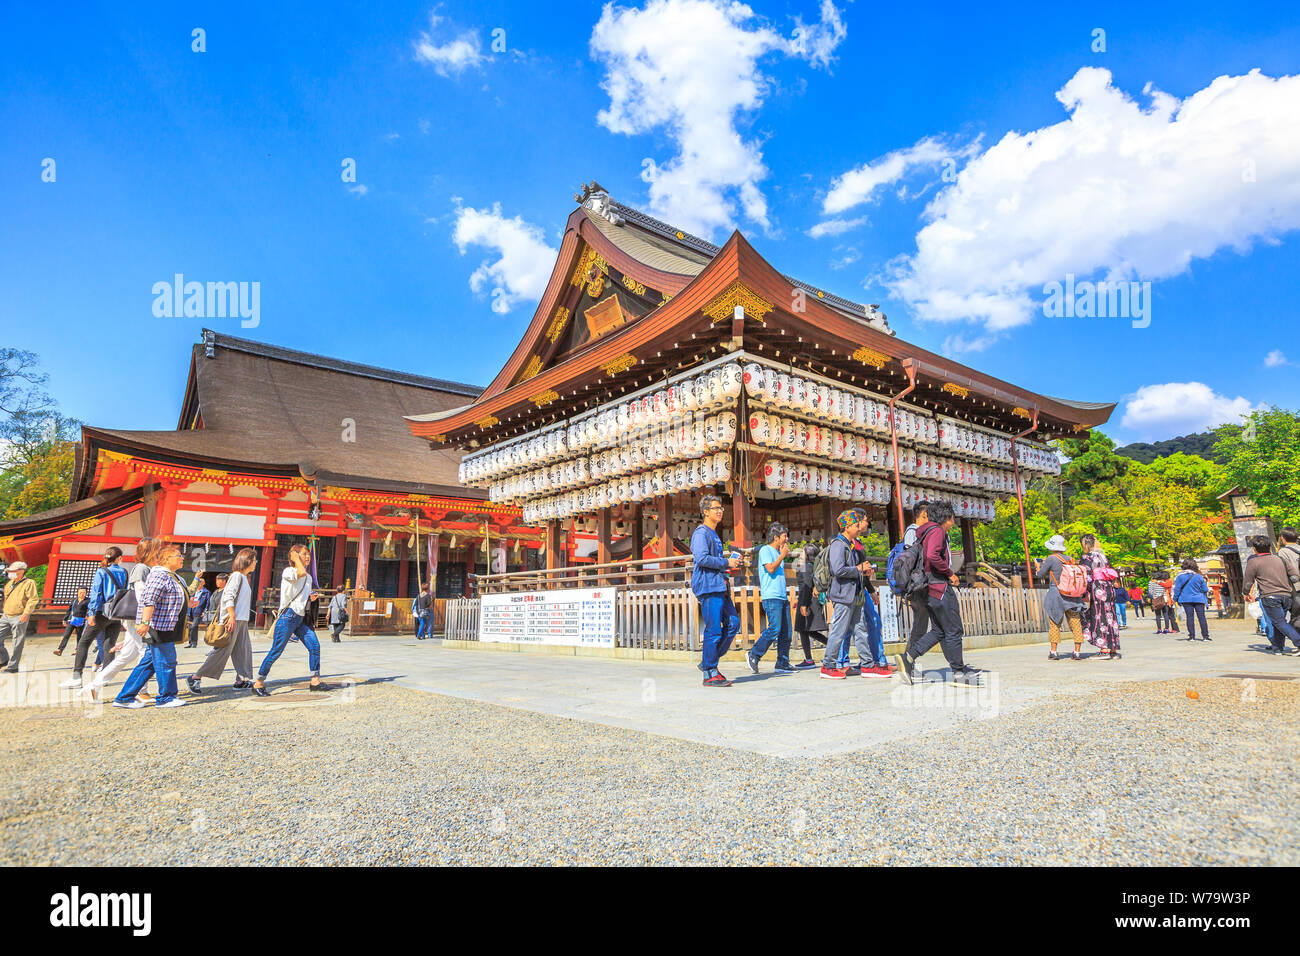 Kyoto, Giappone - 24 aprile 2017: La gente visita padiglione di legno della sala principale decorata con lanterne di carta del Santuario di Yasaka. Il Santuario di Gion è uno dei più numerosi Foto Stock